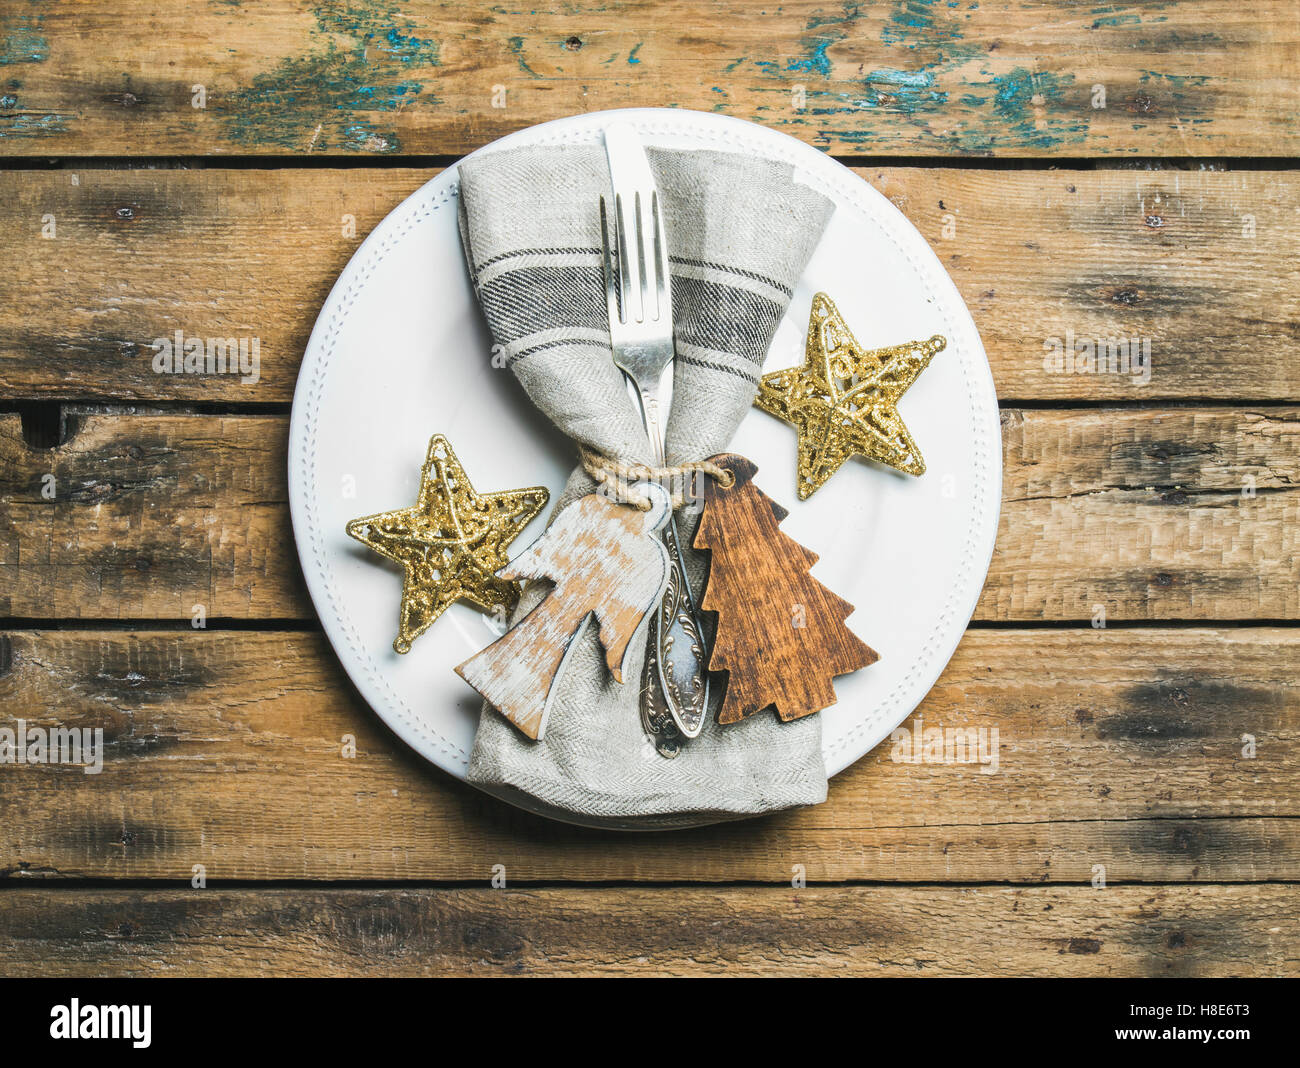 Weihnachten oder Silvester Urlaub rustikale Tischdekoration. Weißen Teller  mit Leinen Servietten, Serviettenringe, Tafelsilber und "goldene Sterne" o  Stockfotografie - Alamy